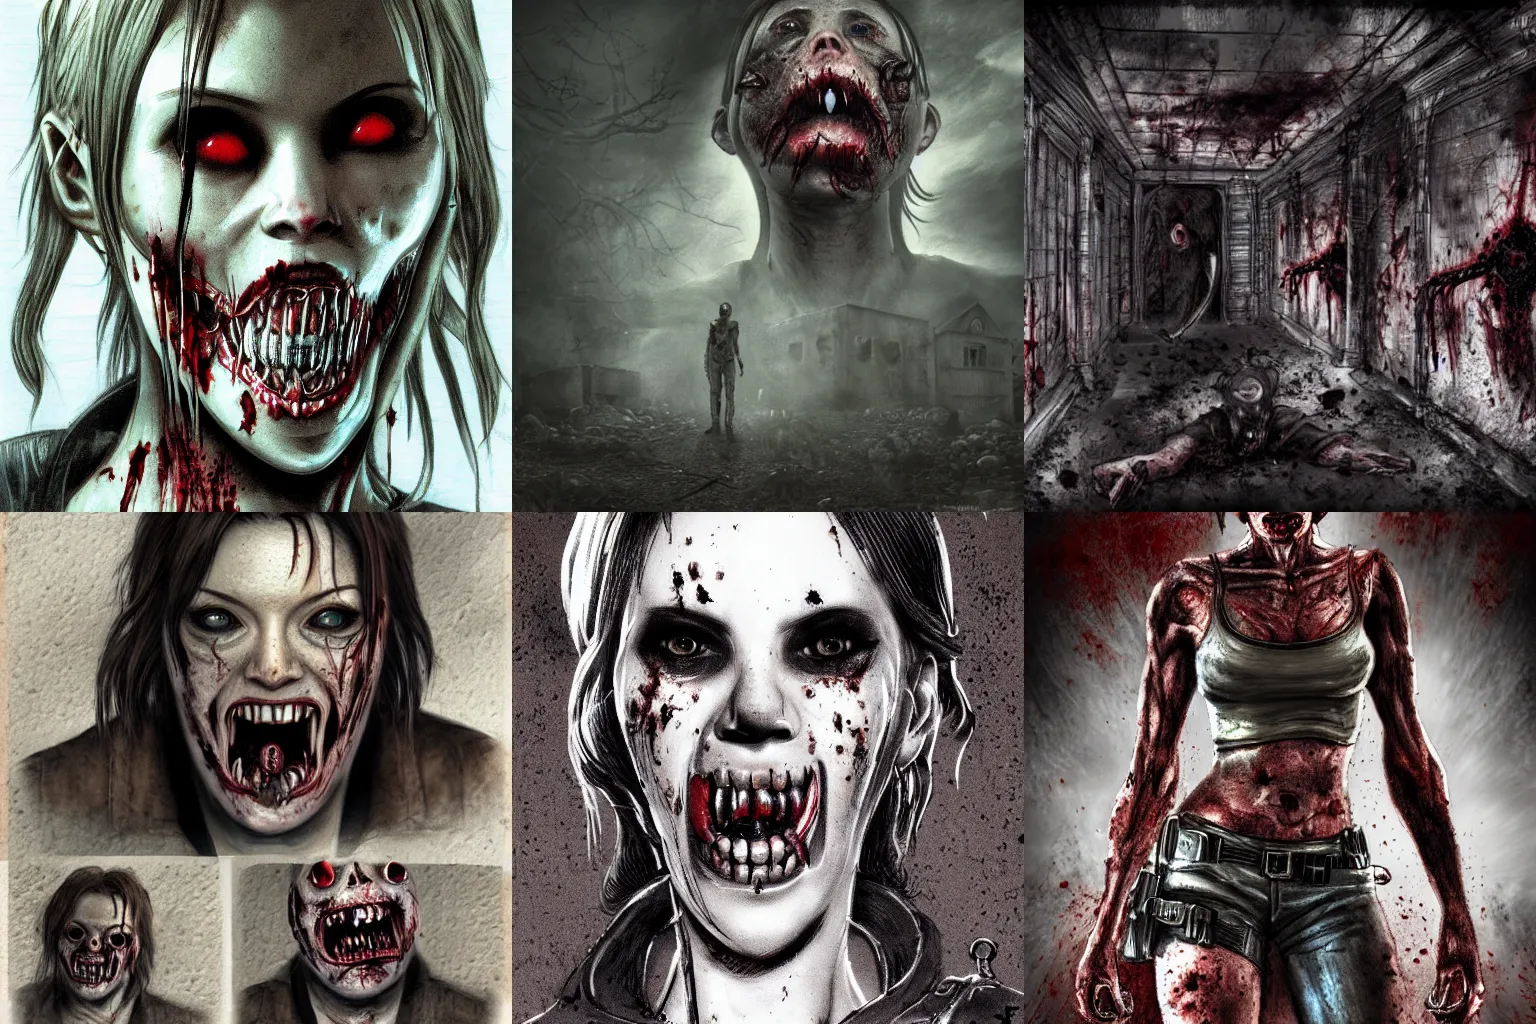 Prompt: Resident Evil licker concept art, highly detailed, horror, scary, terrifying, horrific, nighttime, dimly lit, creepy hd 4k